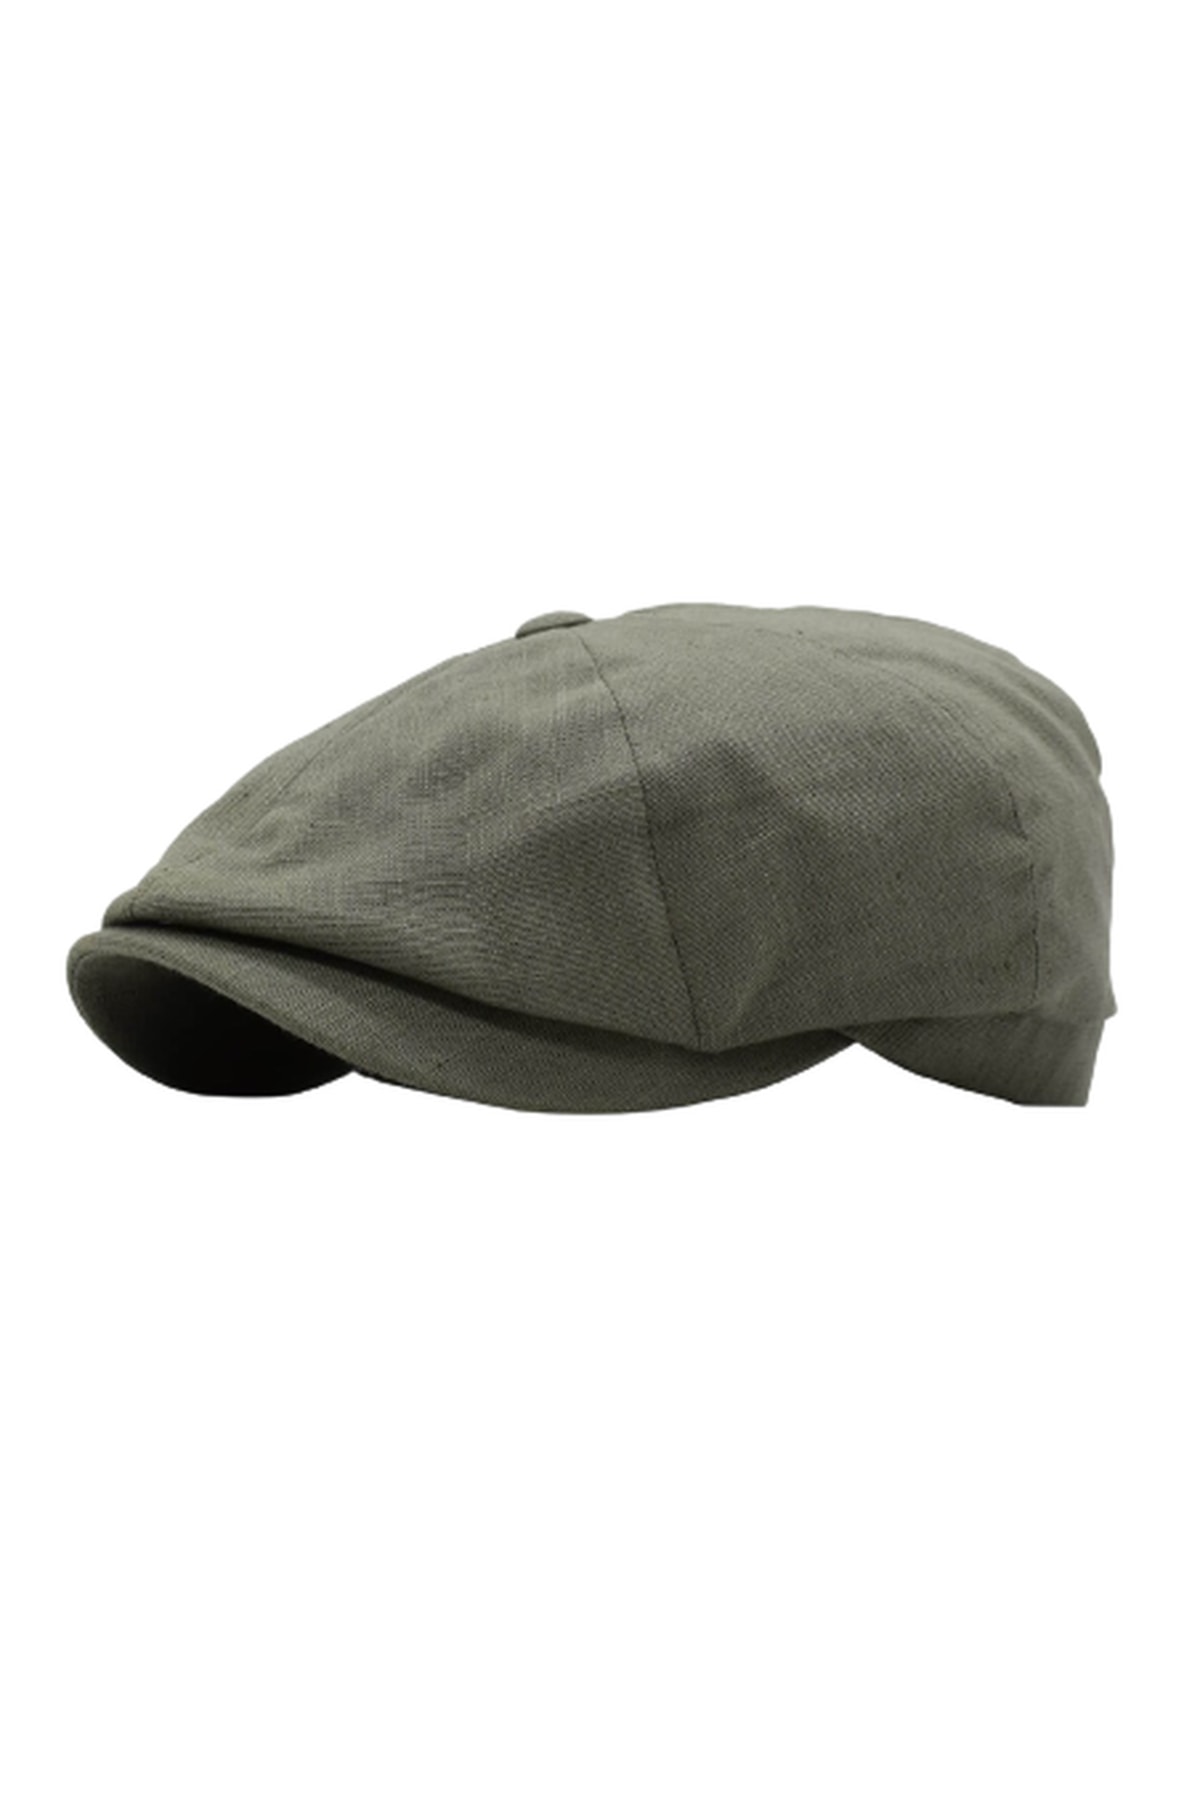 CosmoOutlet Ingiliz Stili Sekiz Parça Arkası Lastikli Yazlık Haki Şapka